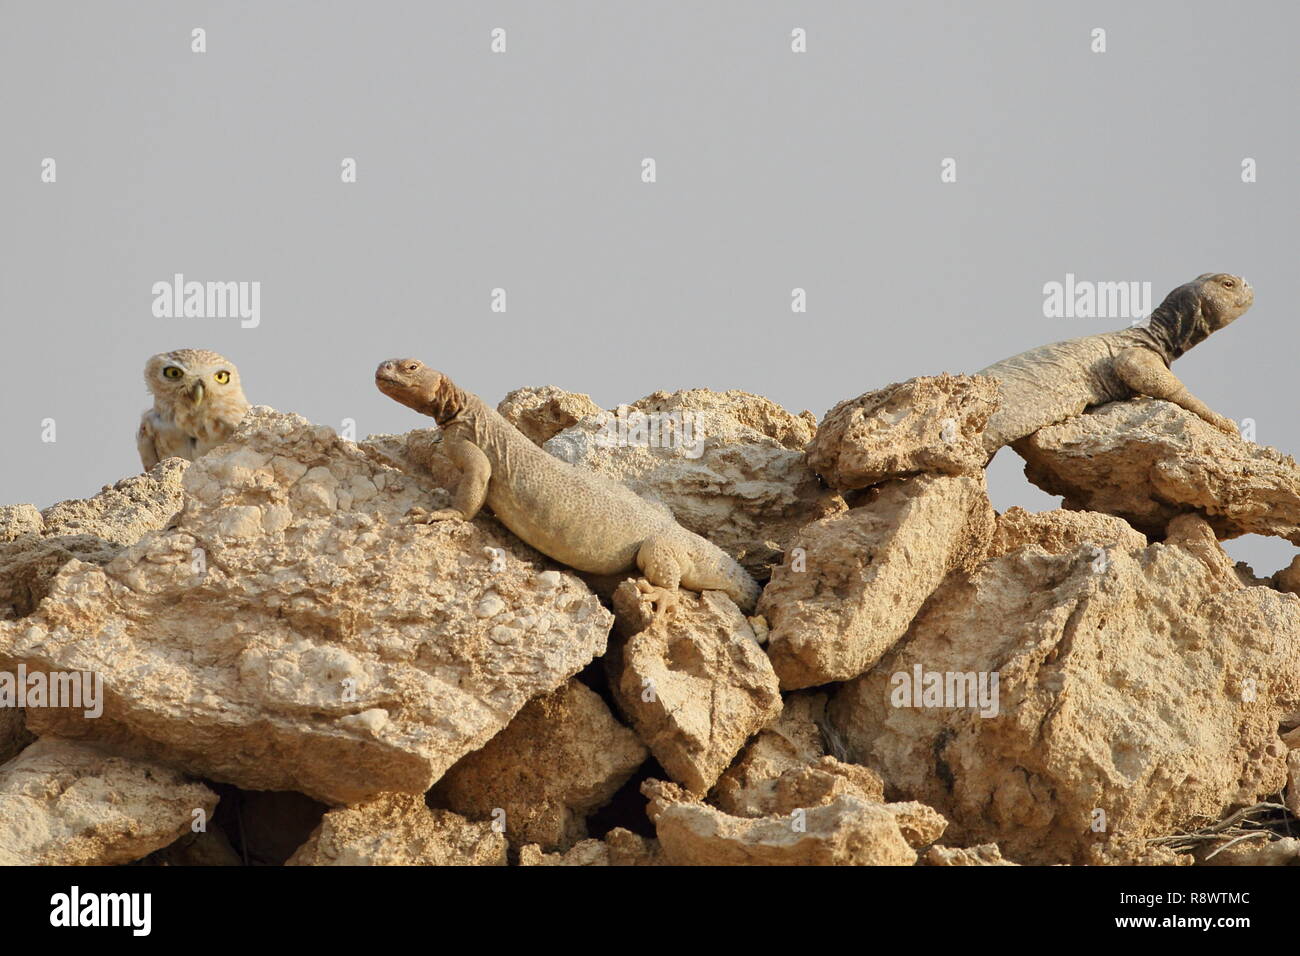 Vista rara de un pequeño búho alojamiento compartido con los lagartos de cola espinosa en montón de rocas en el desierto de Arabia. Foto de stock